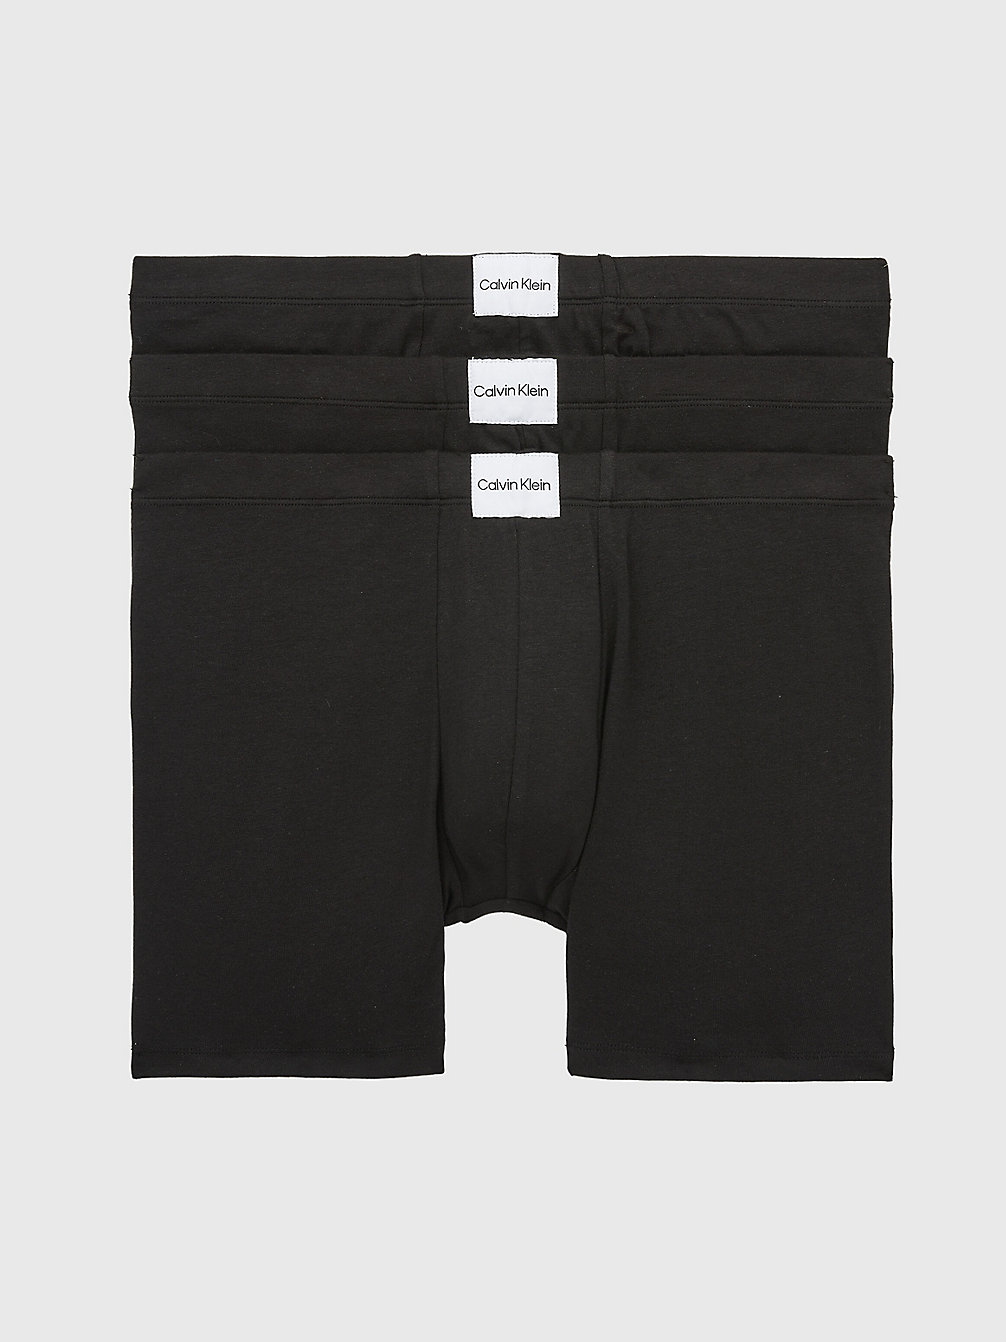 BLACK/ BLACK/ BLACK 3 Pack Boxershorts - Pure Cotton undefined Herren Calvin Klein